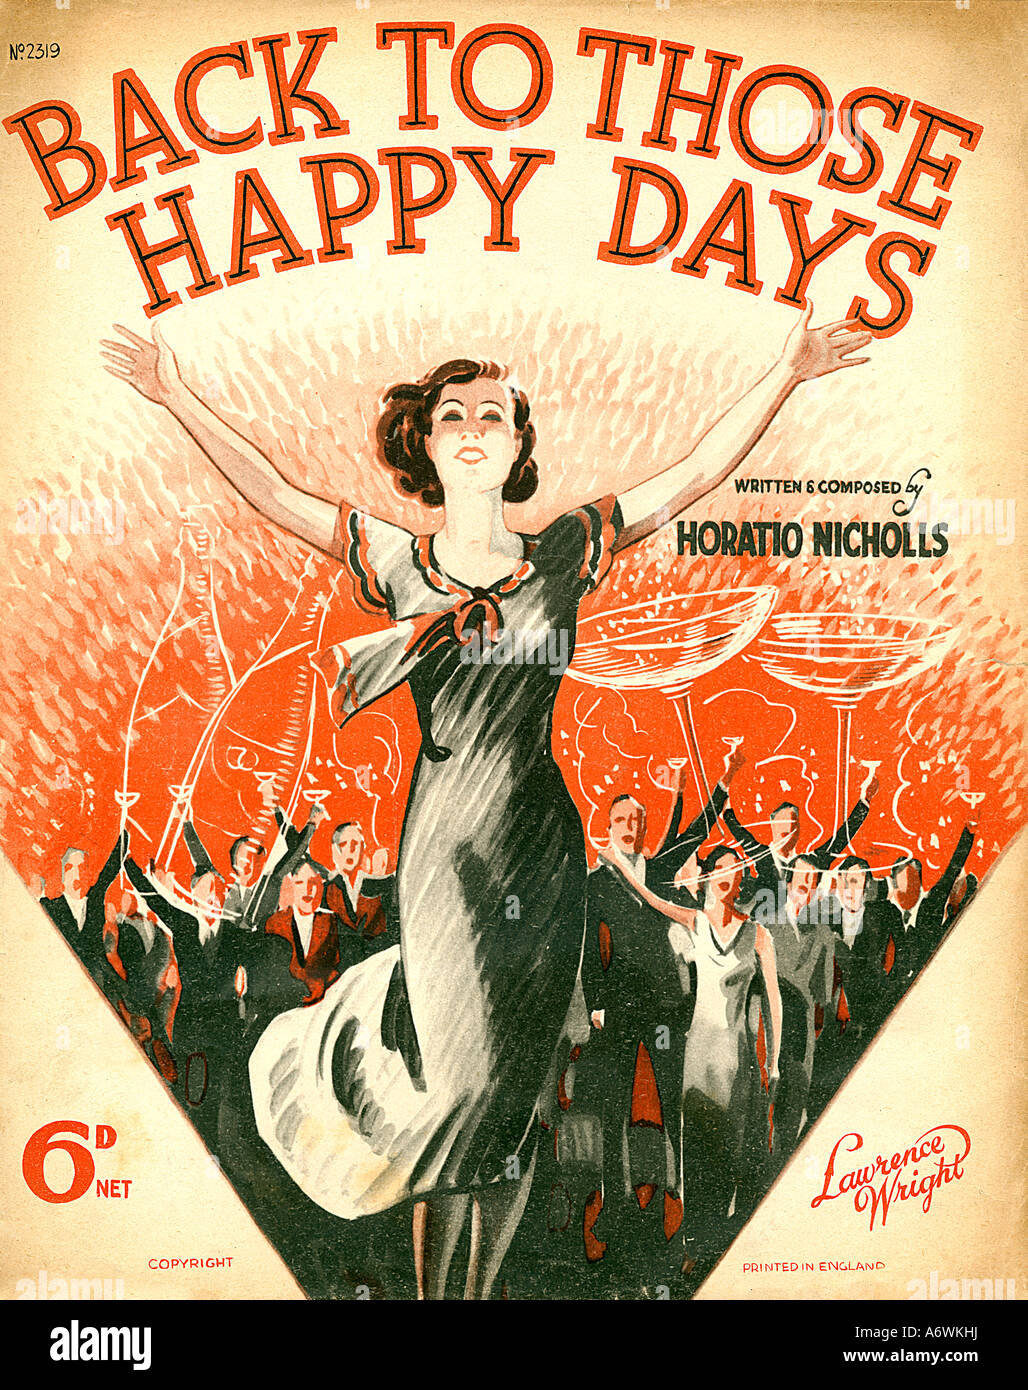 Retour à ceux des jours heureux 1935 song sheet couvrir pour Horatio Nicholls composition à propos de temps meilleurs retourné Banque D'Images